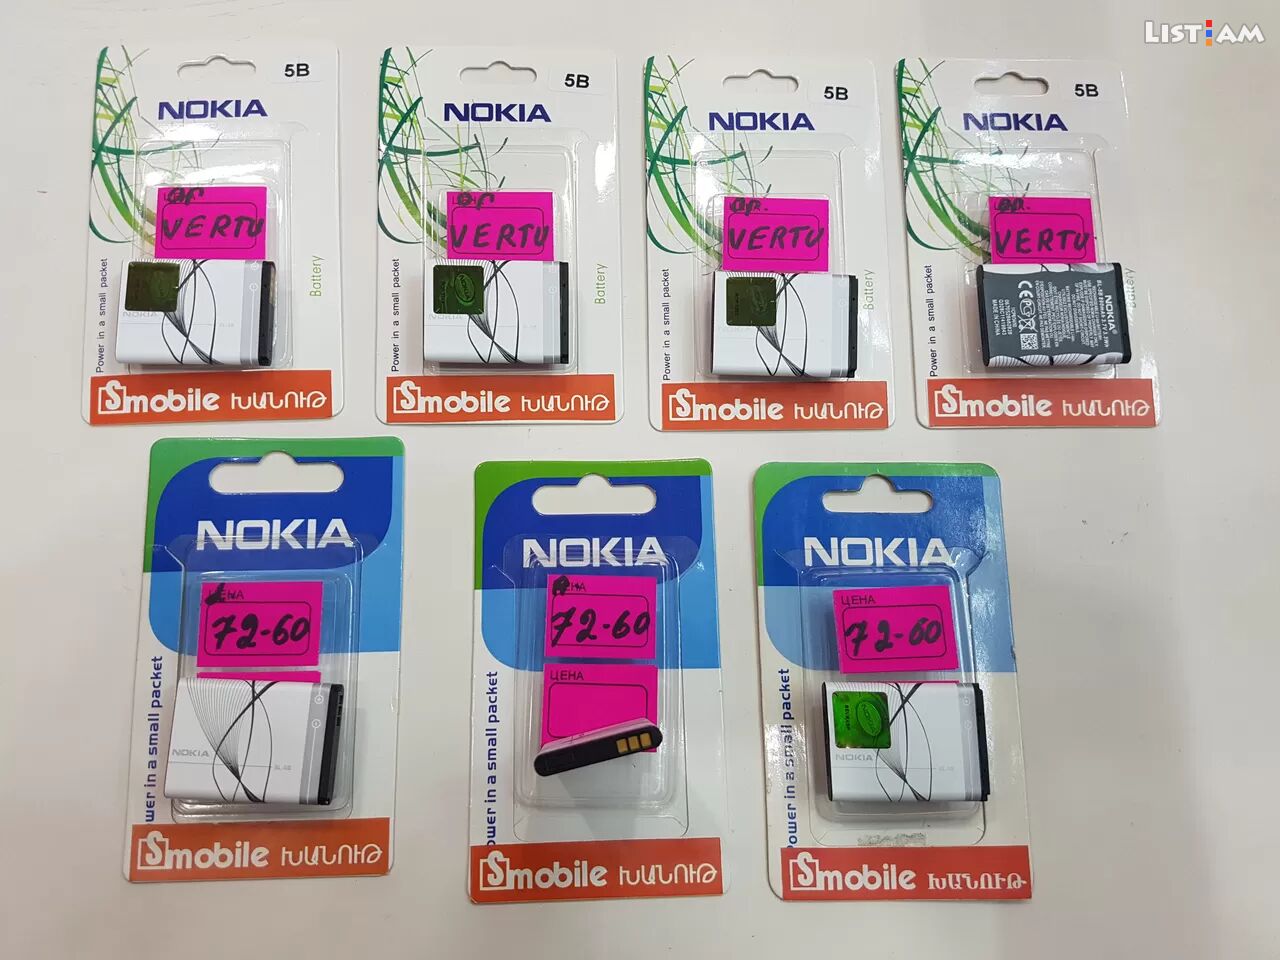 Nokia vertu battery